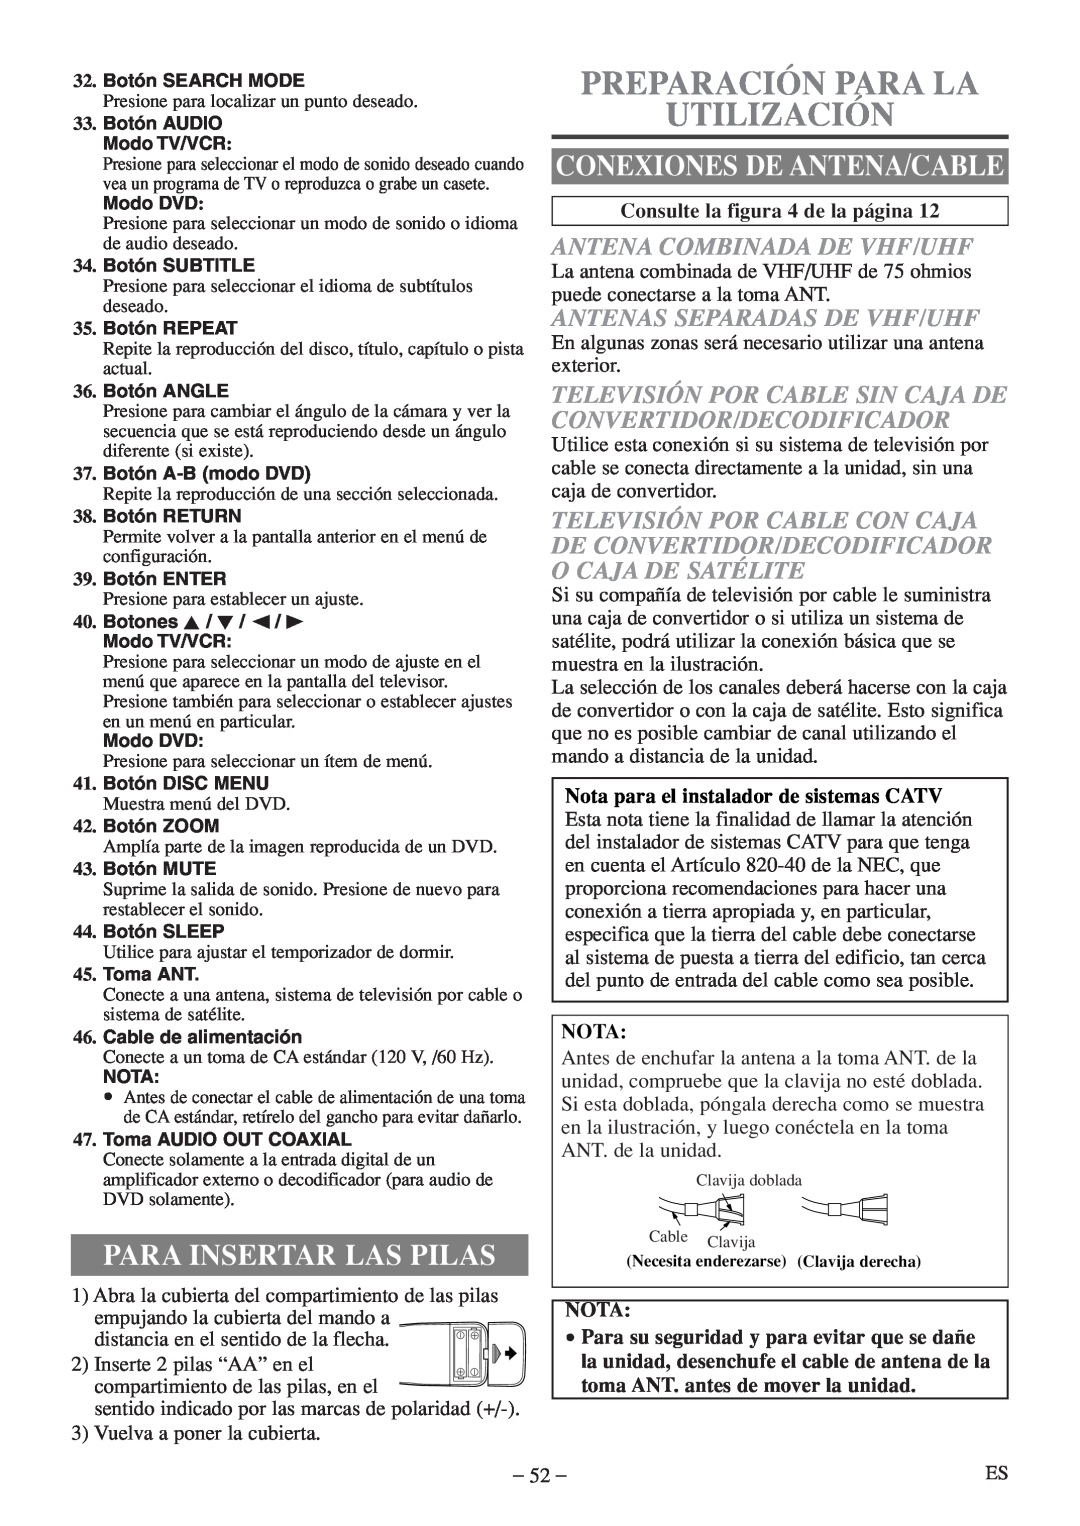 Sylvania 6724FDF owner manual Preparación Para La Utilización, Para Insertar Las Pilas, Conexiones De Antena/Cable, Nota 